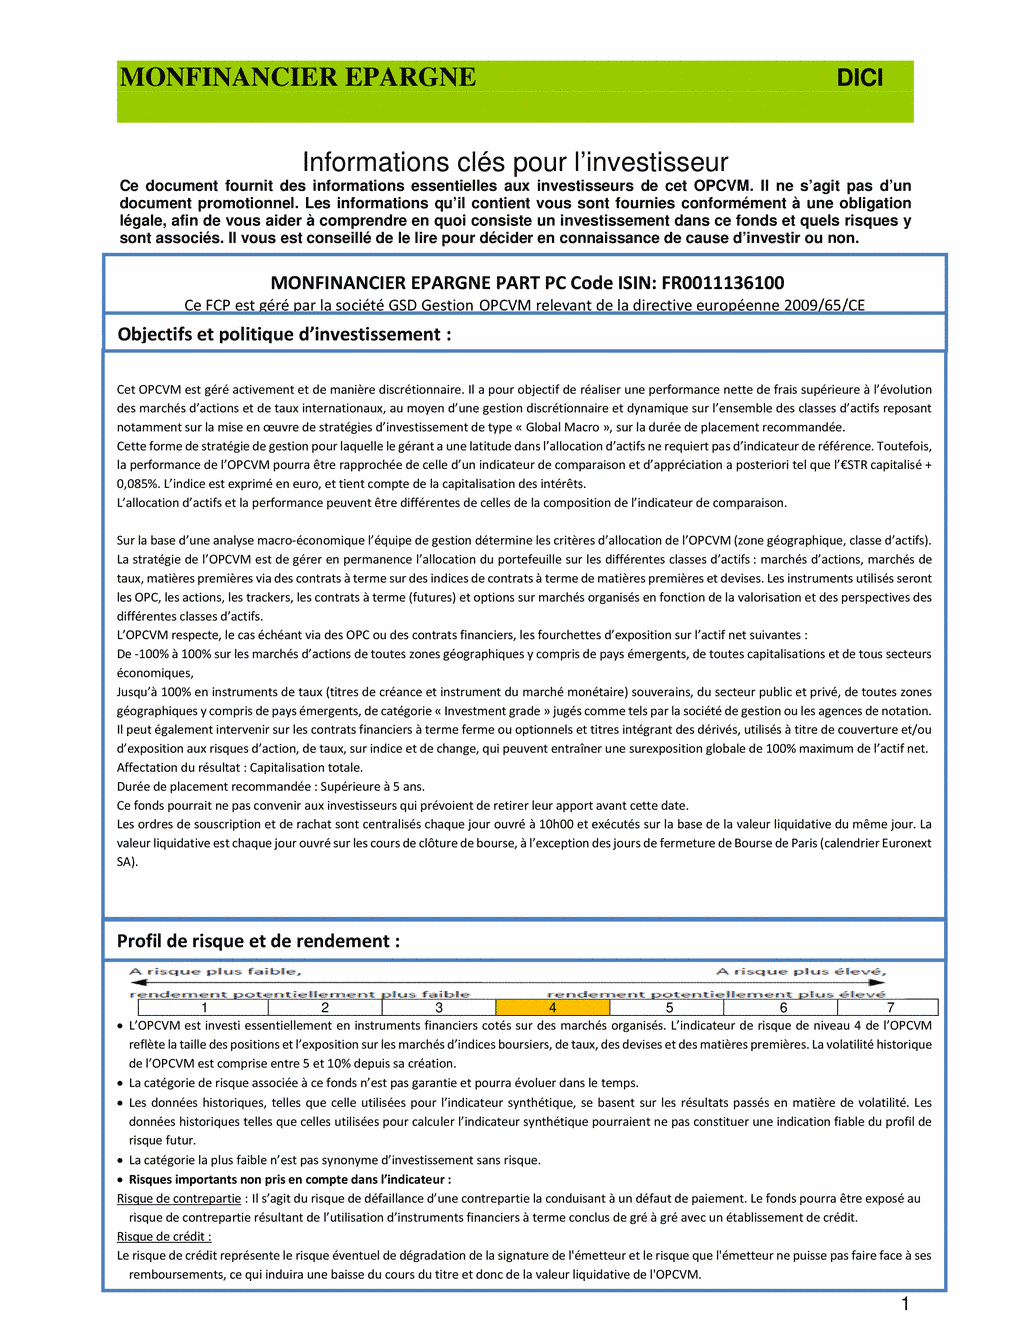 DICI-Prospectus Monfinancier Epargne - 14/05/2021 - undefined